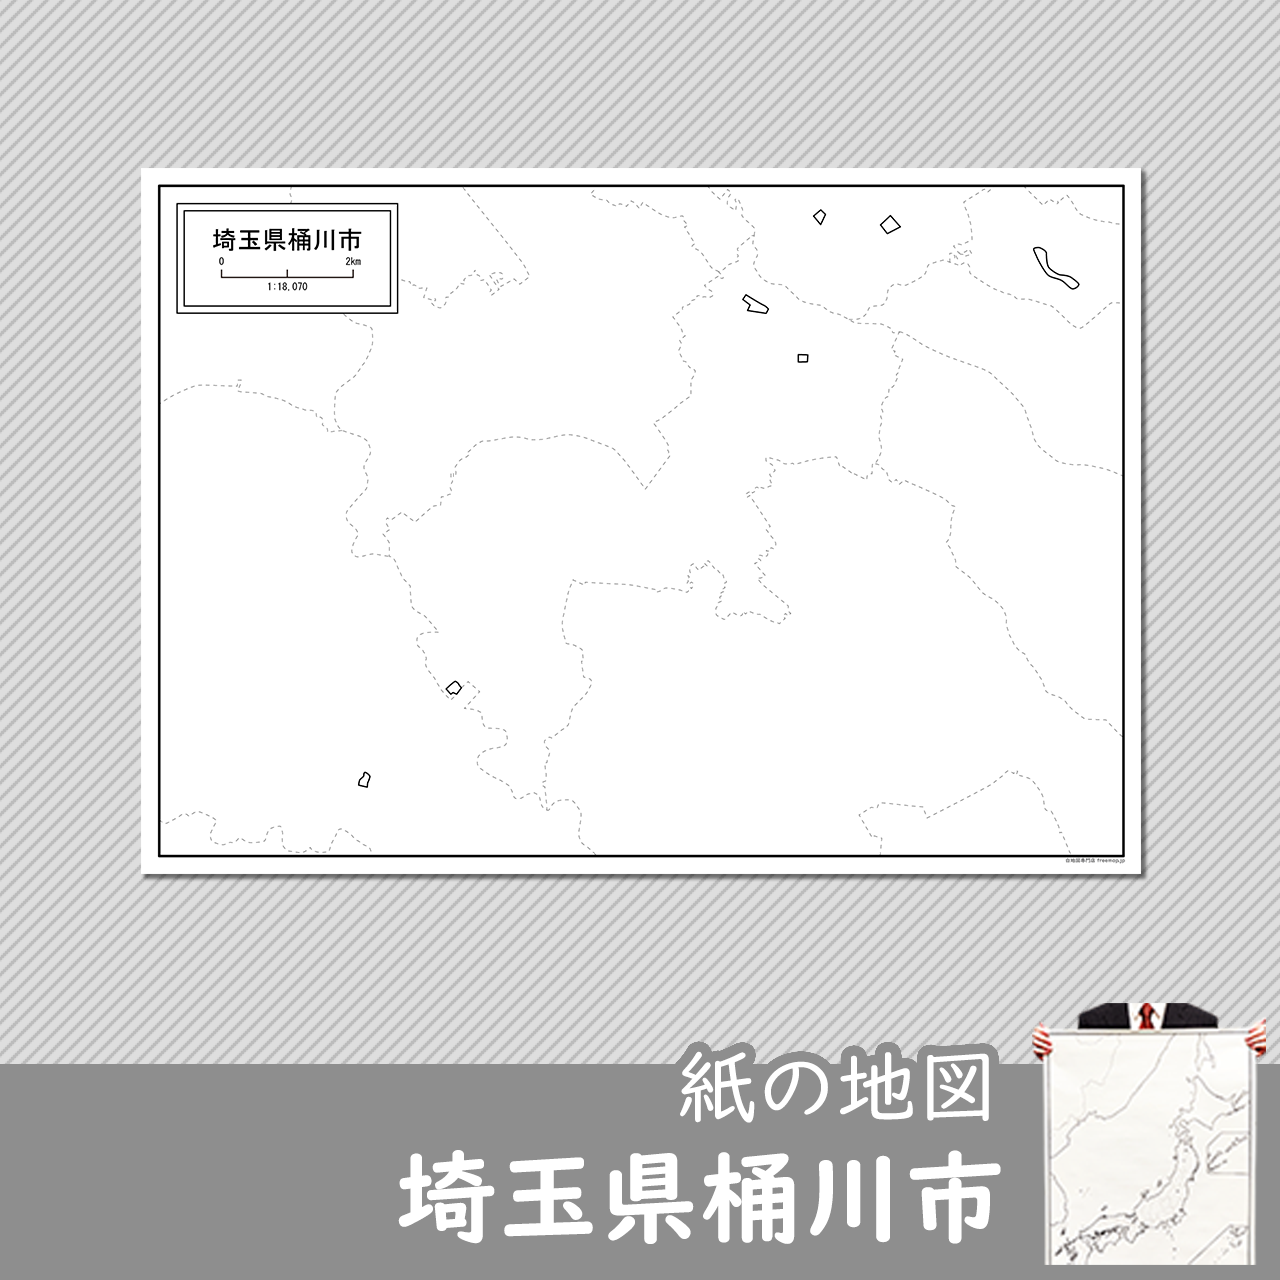 桶川市の紙の白地図のサムネイル